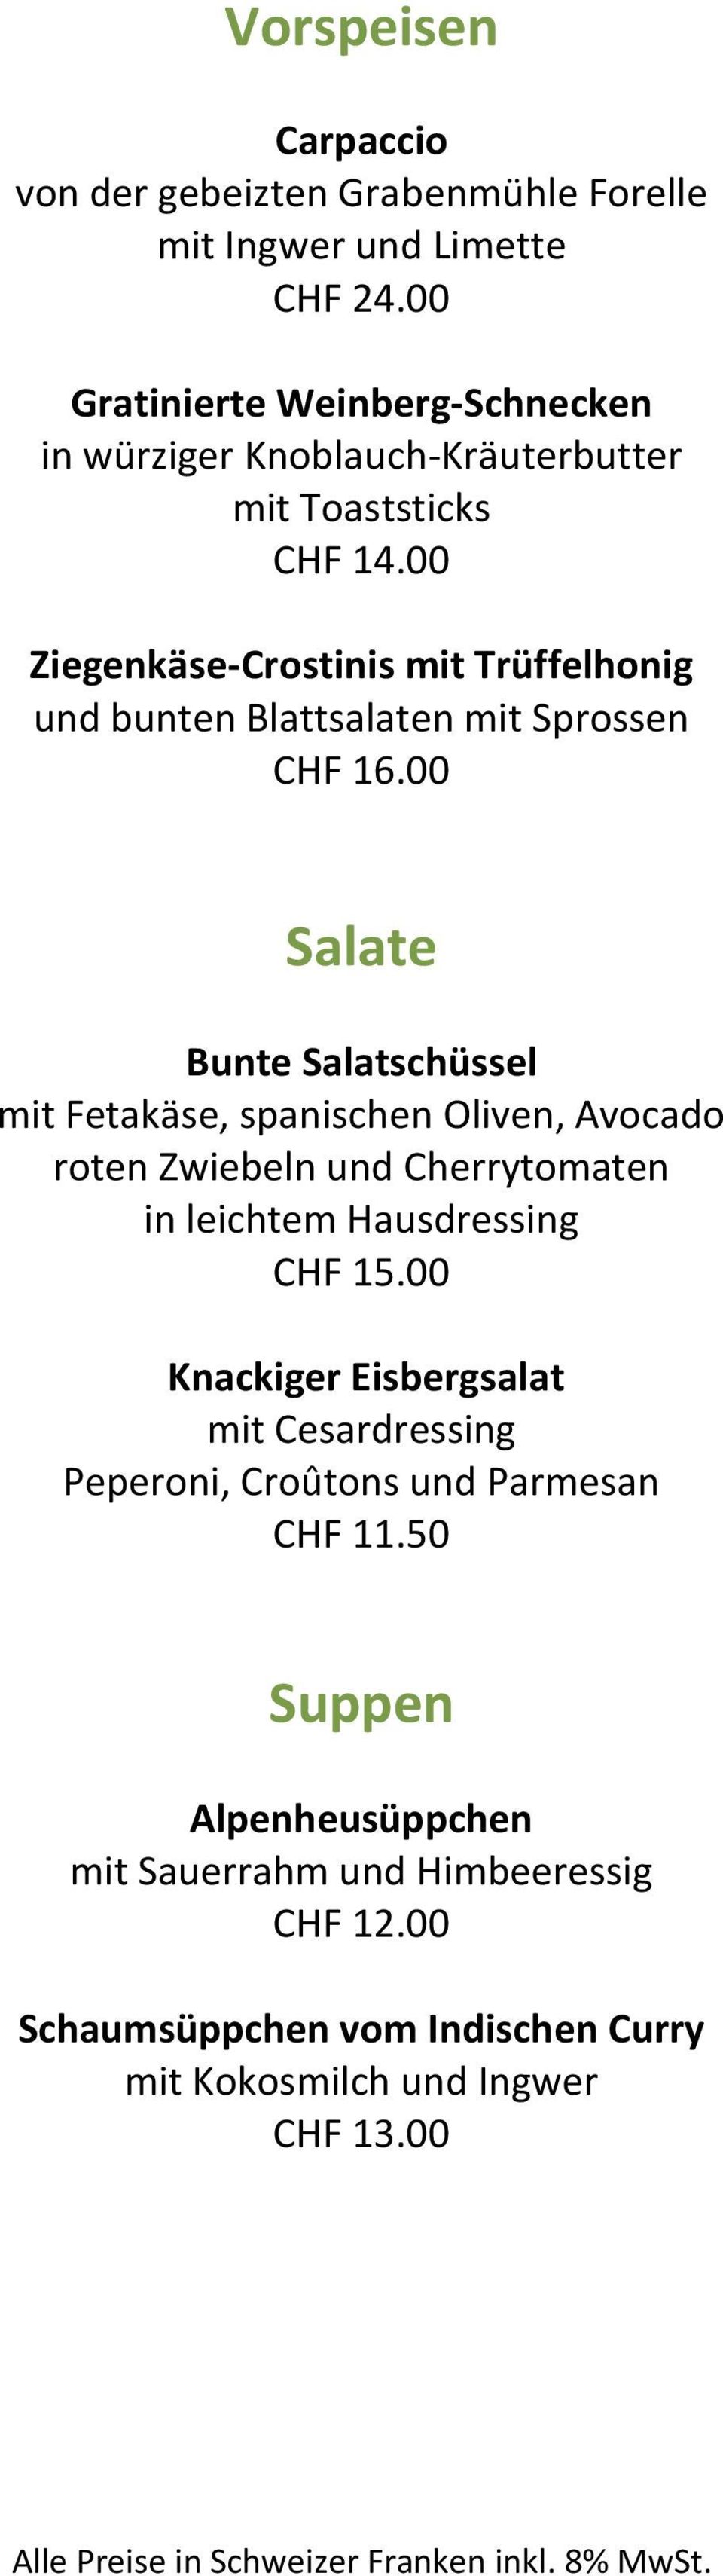 00 Ziegenkäse-Crostinis mit Trüffelhonig und bunten Blattsalaten mit Sprossen CHF 16.